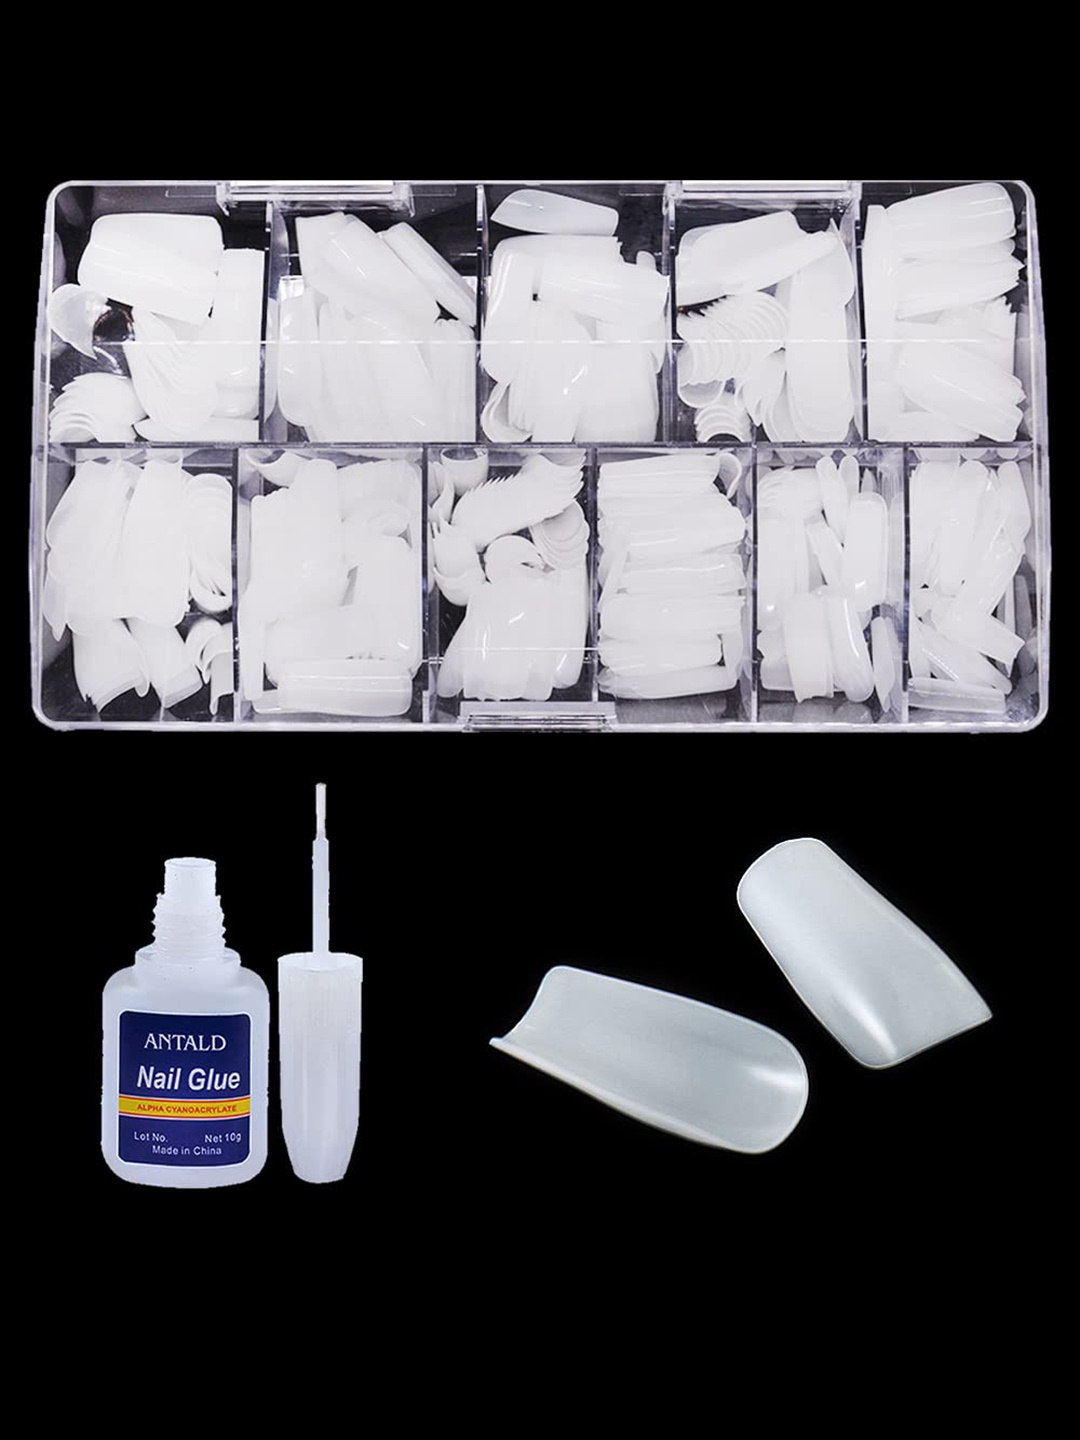 

SYGA Set Of 240 Square False Nails With Glue Bottle - 10g - White